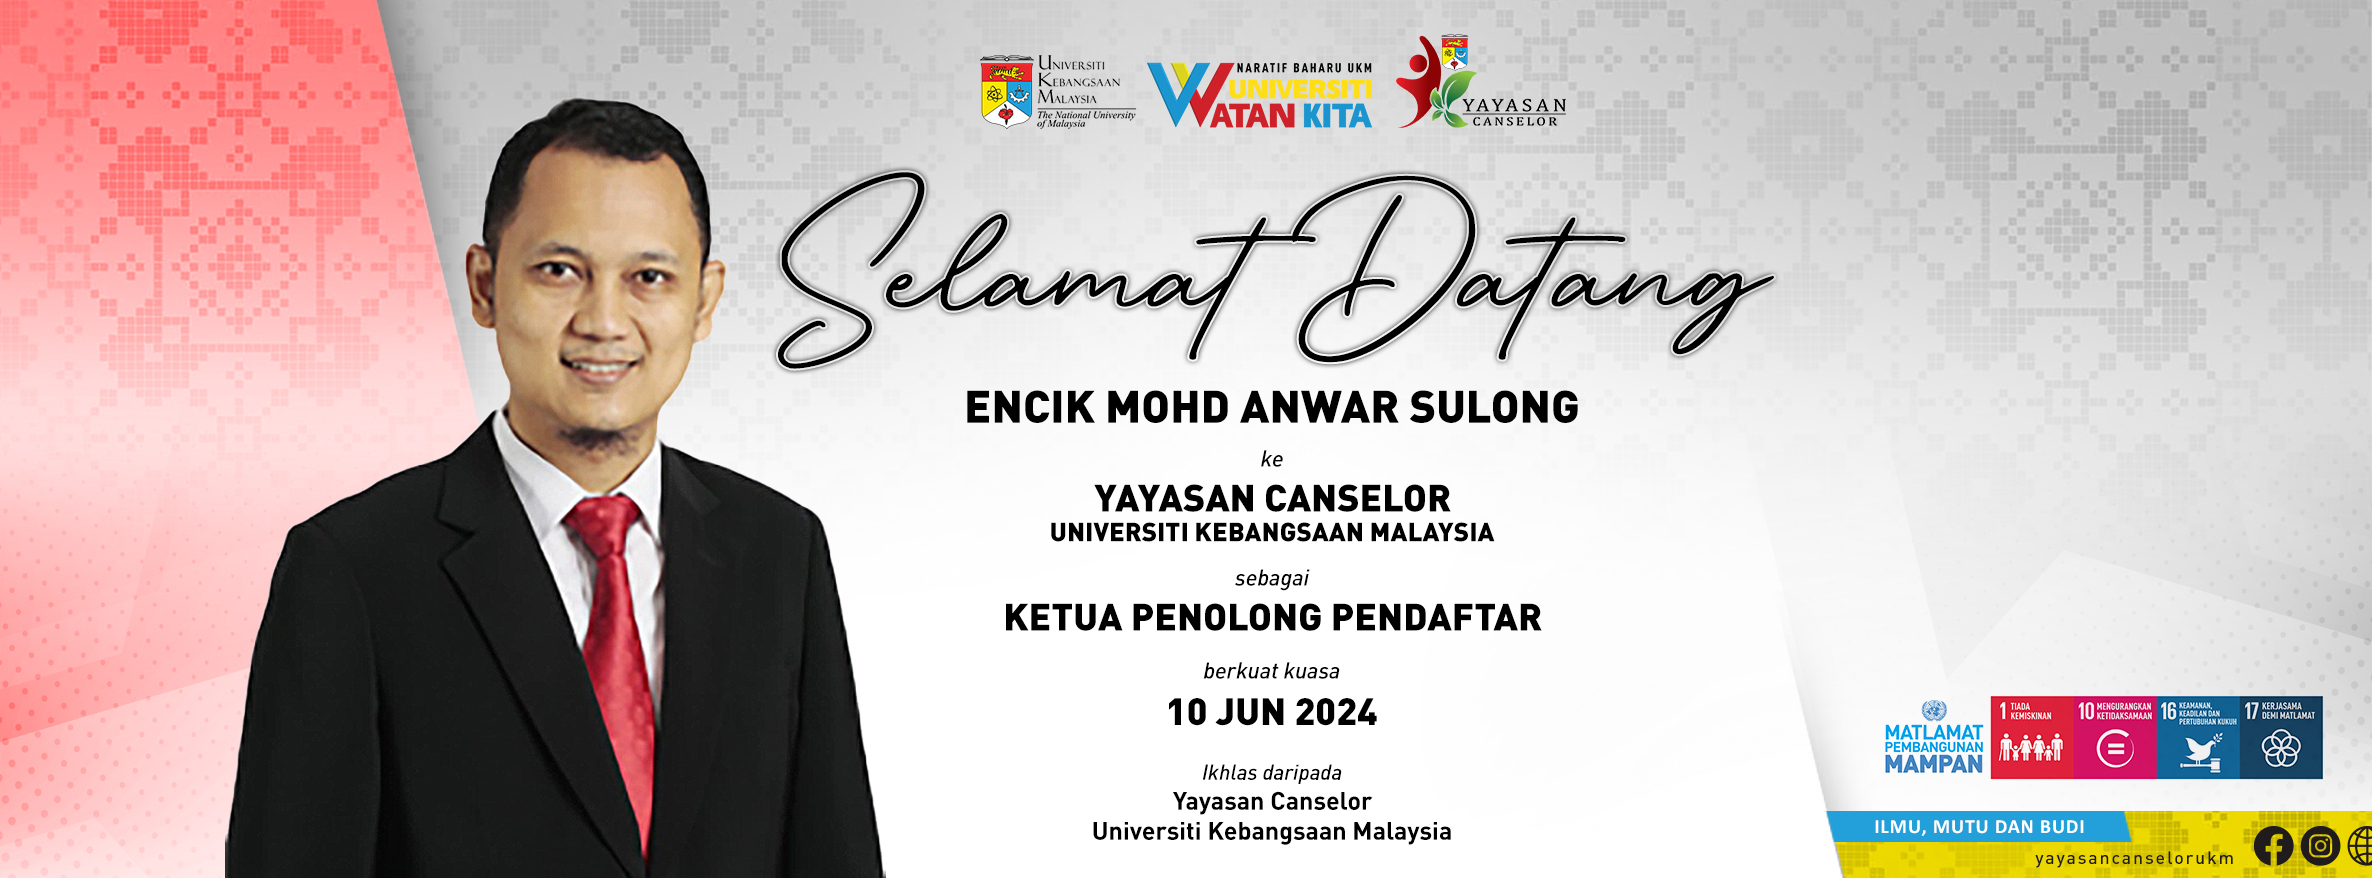 BANNER SELAMAT DATANG-En. Mohd Anwar Sulong